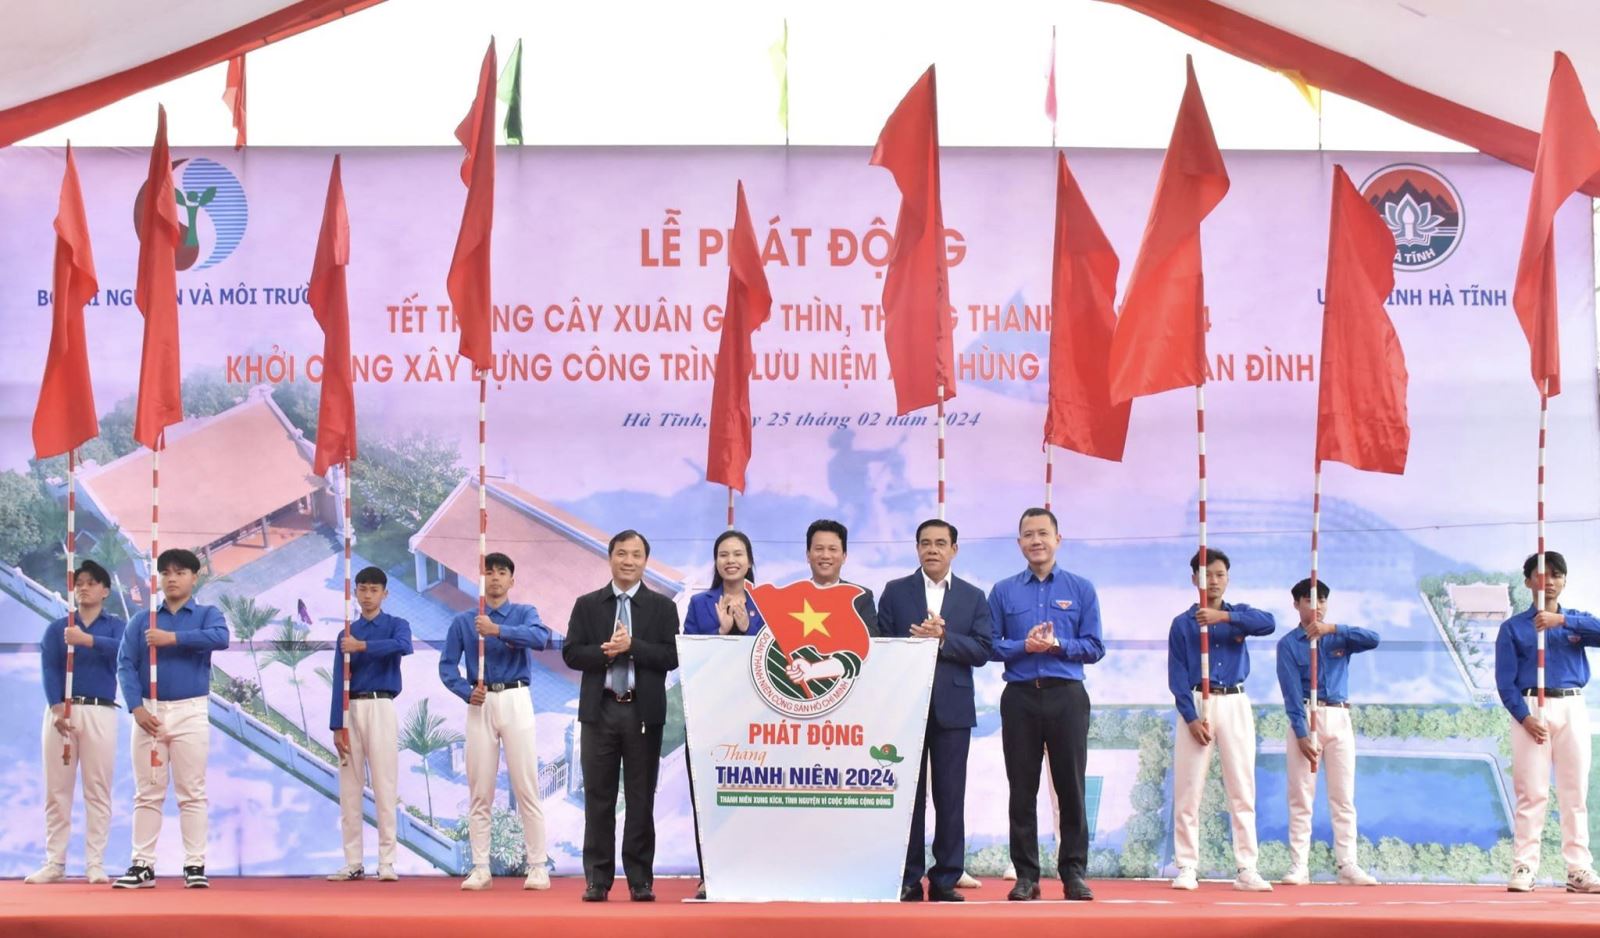 Hà Tĩnh: Tổ chức lễ phát động tết trồng cây và khởi công xây dựng công trình lưu niệm Anh hùng Phan Đình Giót